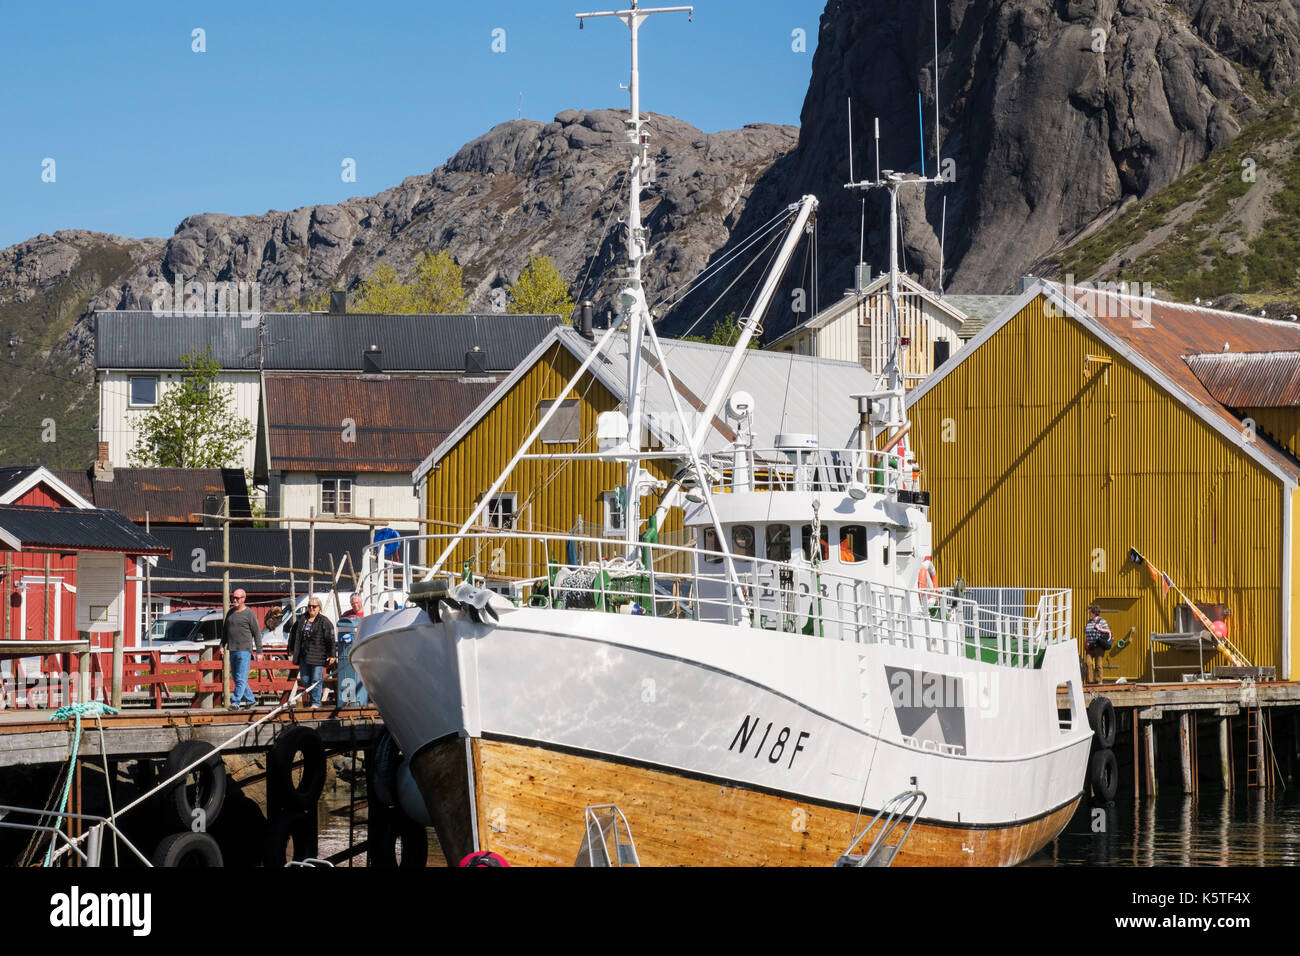 In legno tradizionale barca da pesca villaggio storico porto. Nusfjord, Flakstadøya isola, isole Lofoten arcipelago, Nordland, Norvegia e Scandinavia Foto Stock